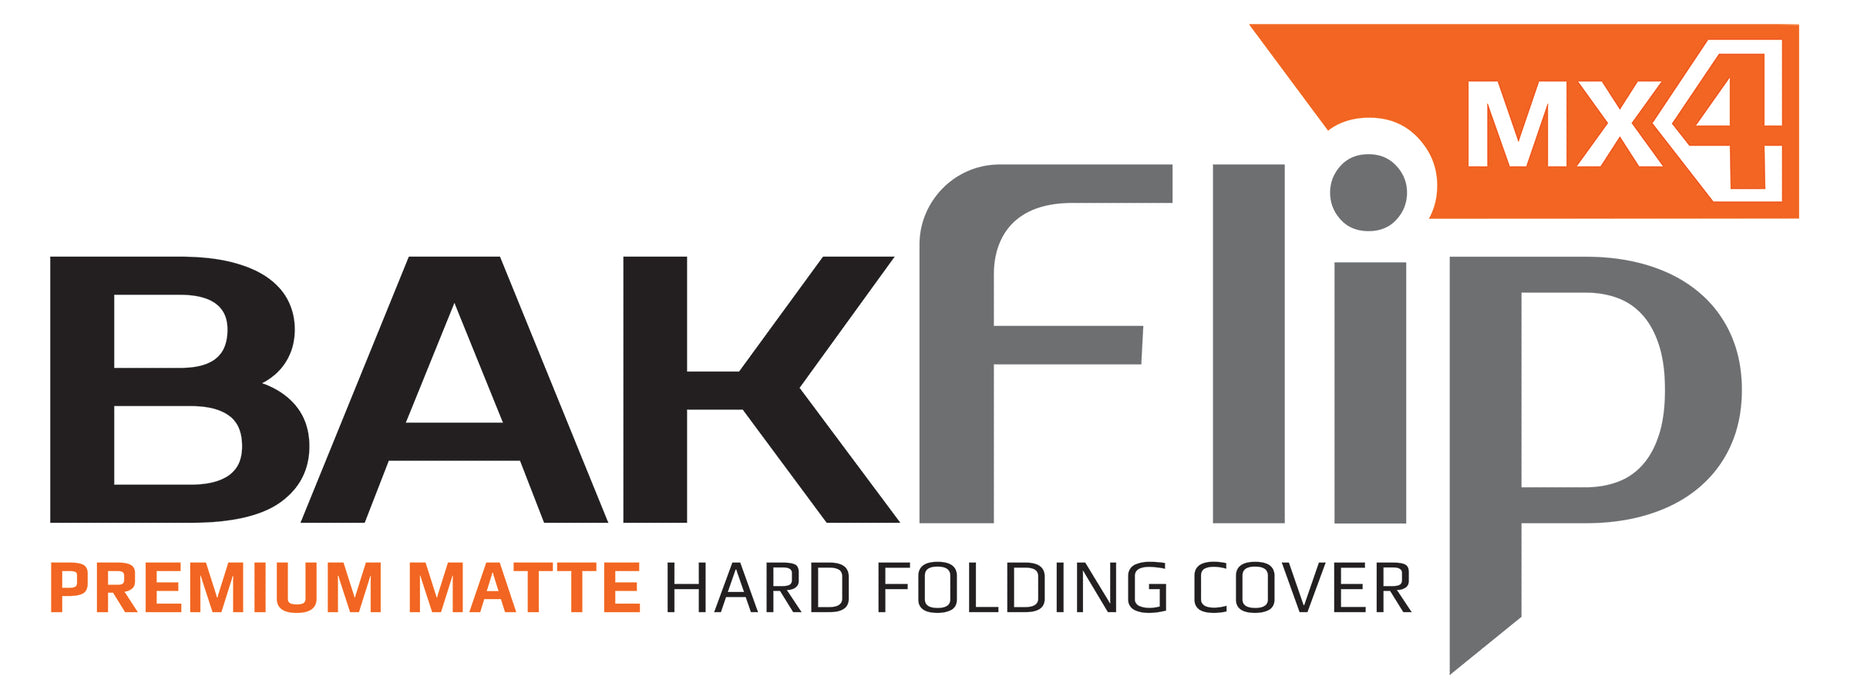 BAK BAKFlip MX4 Hard Folding Truck Bed Cover - Matte Finish - 2021-2023 Ford F-150 8' 2" Bed Model 448338